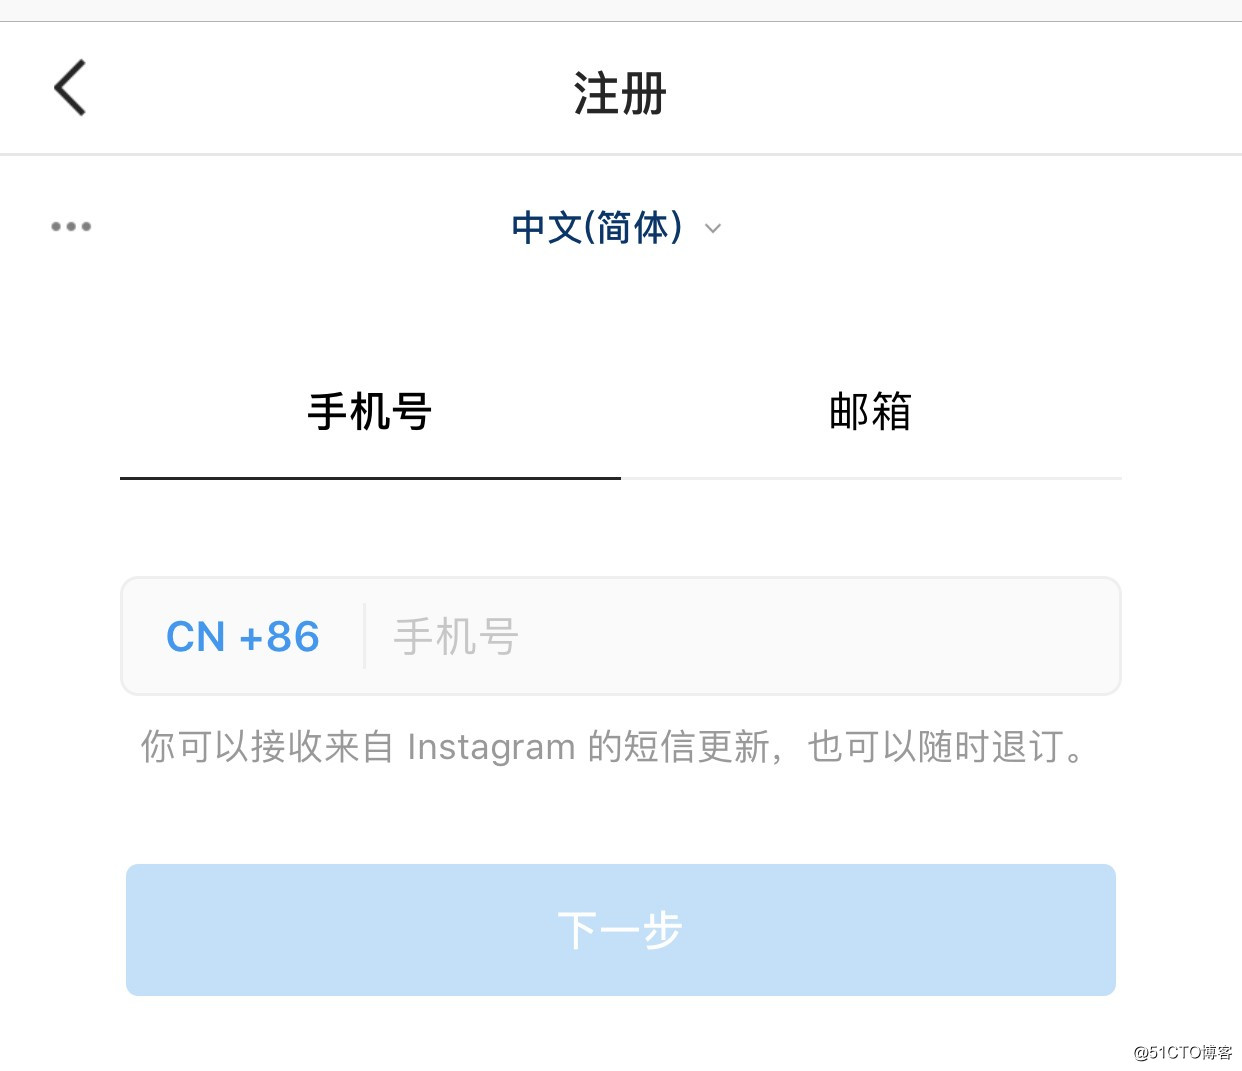 国内怎么上ins_在中国如何使用instagram_最新科学教程 - 代码天地